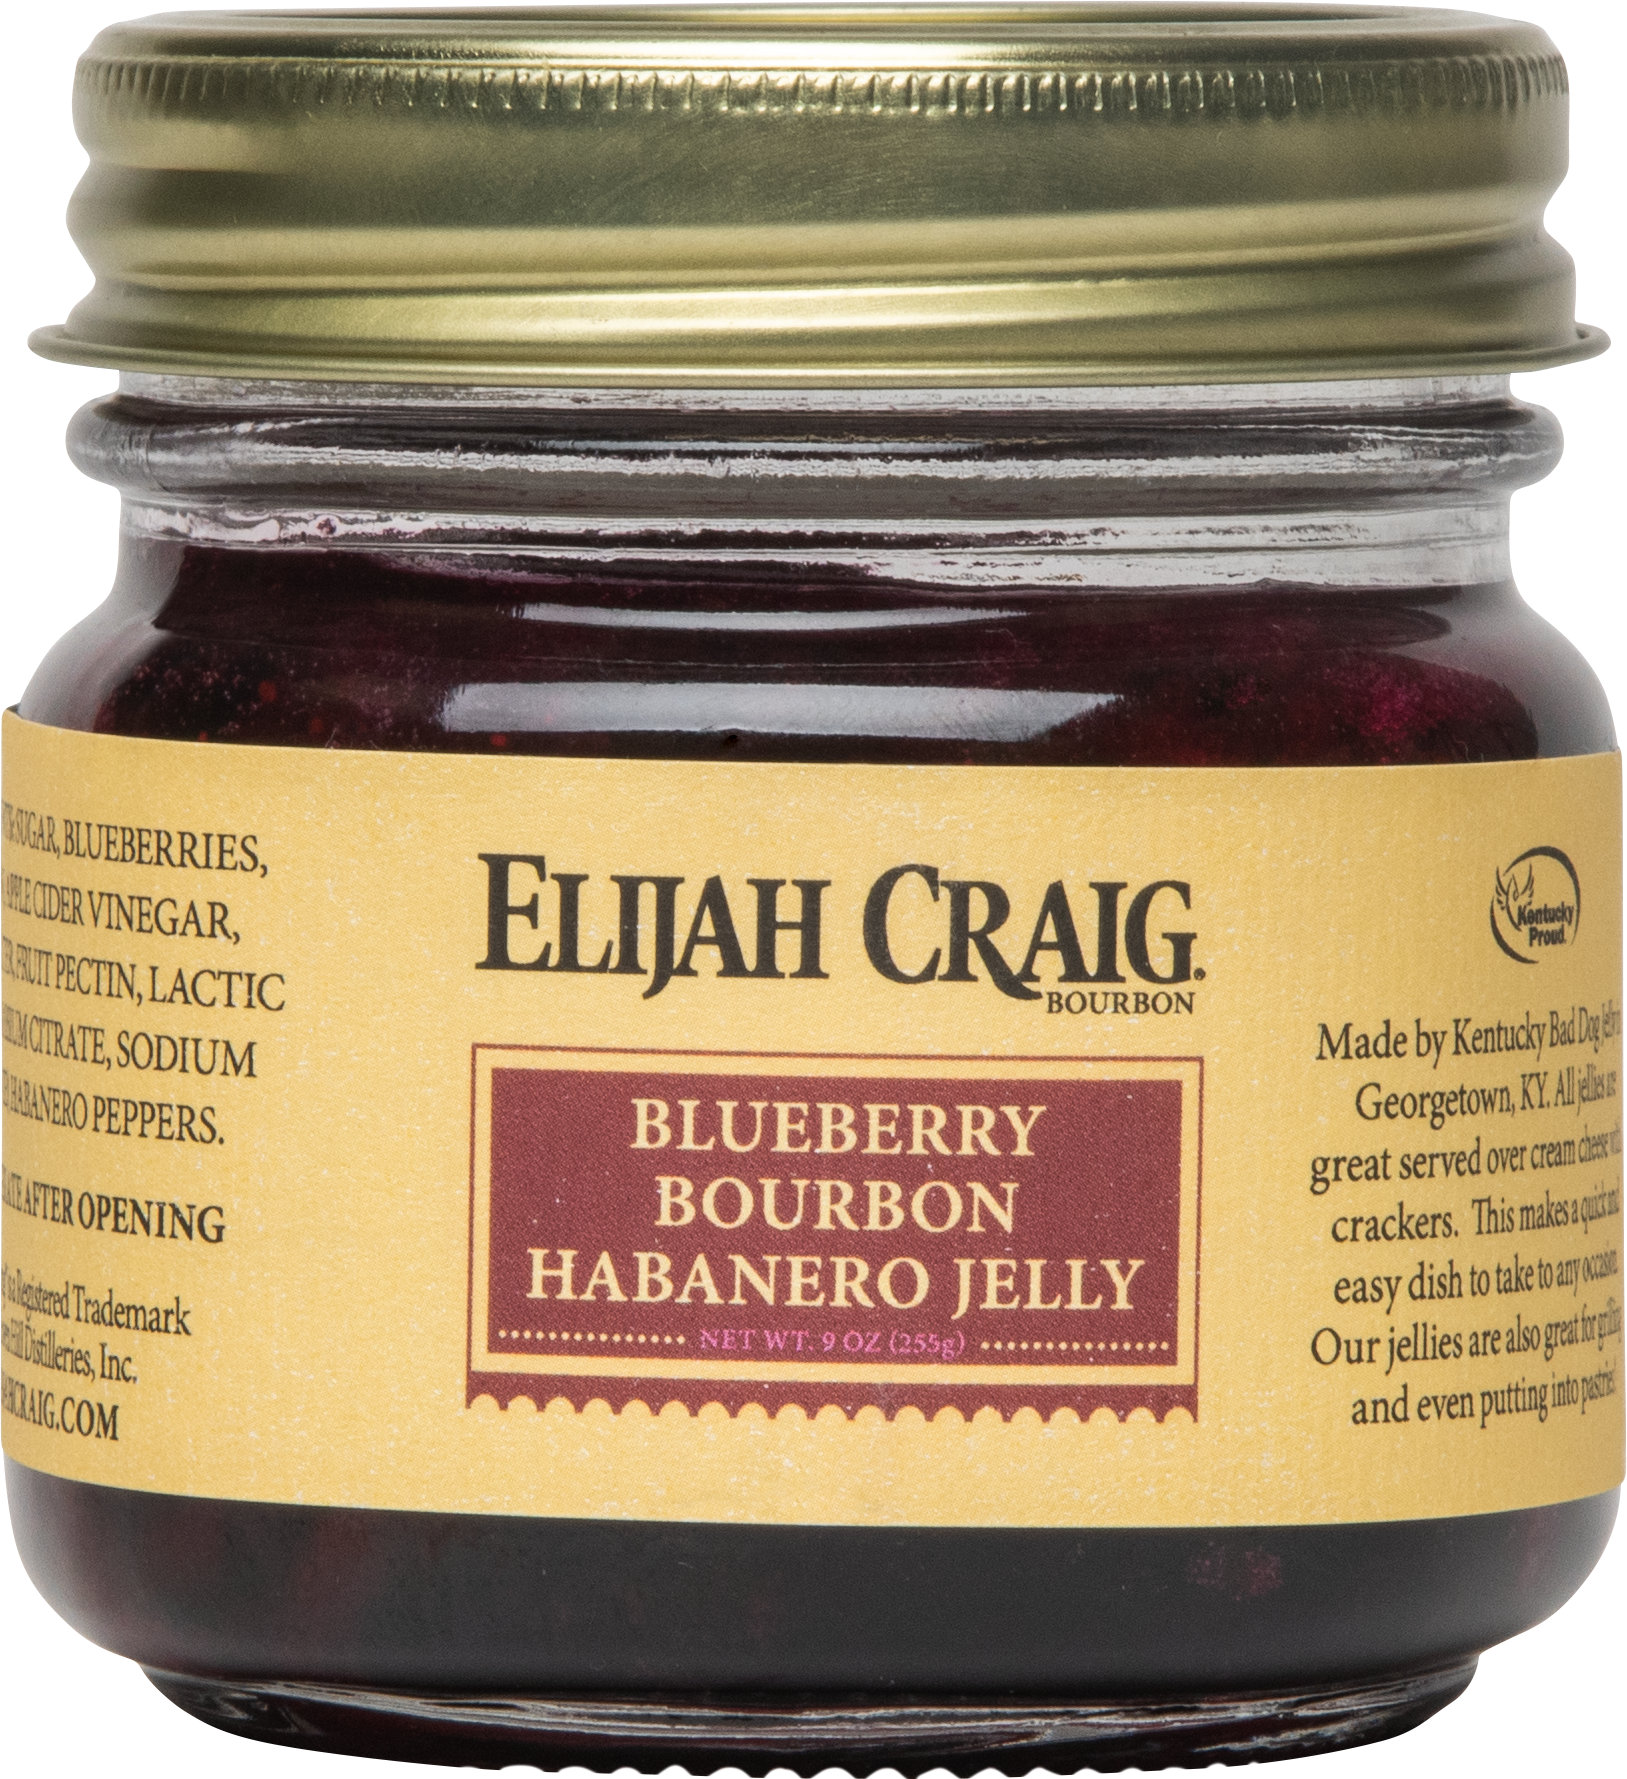 Blueberry Bourbon Habanero Jelly